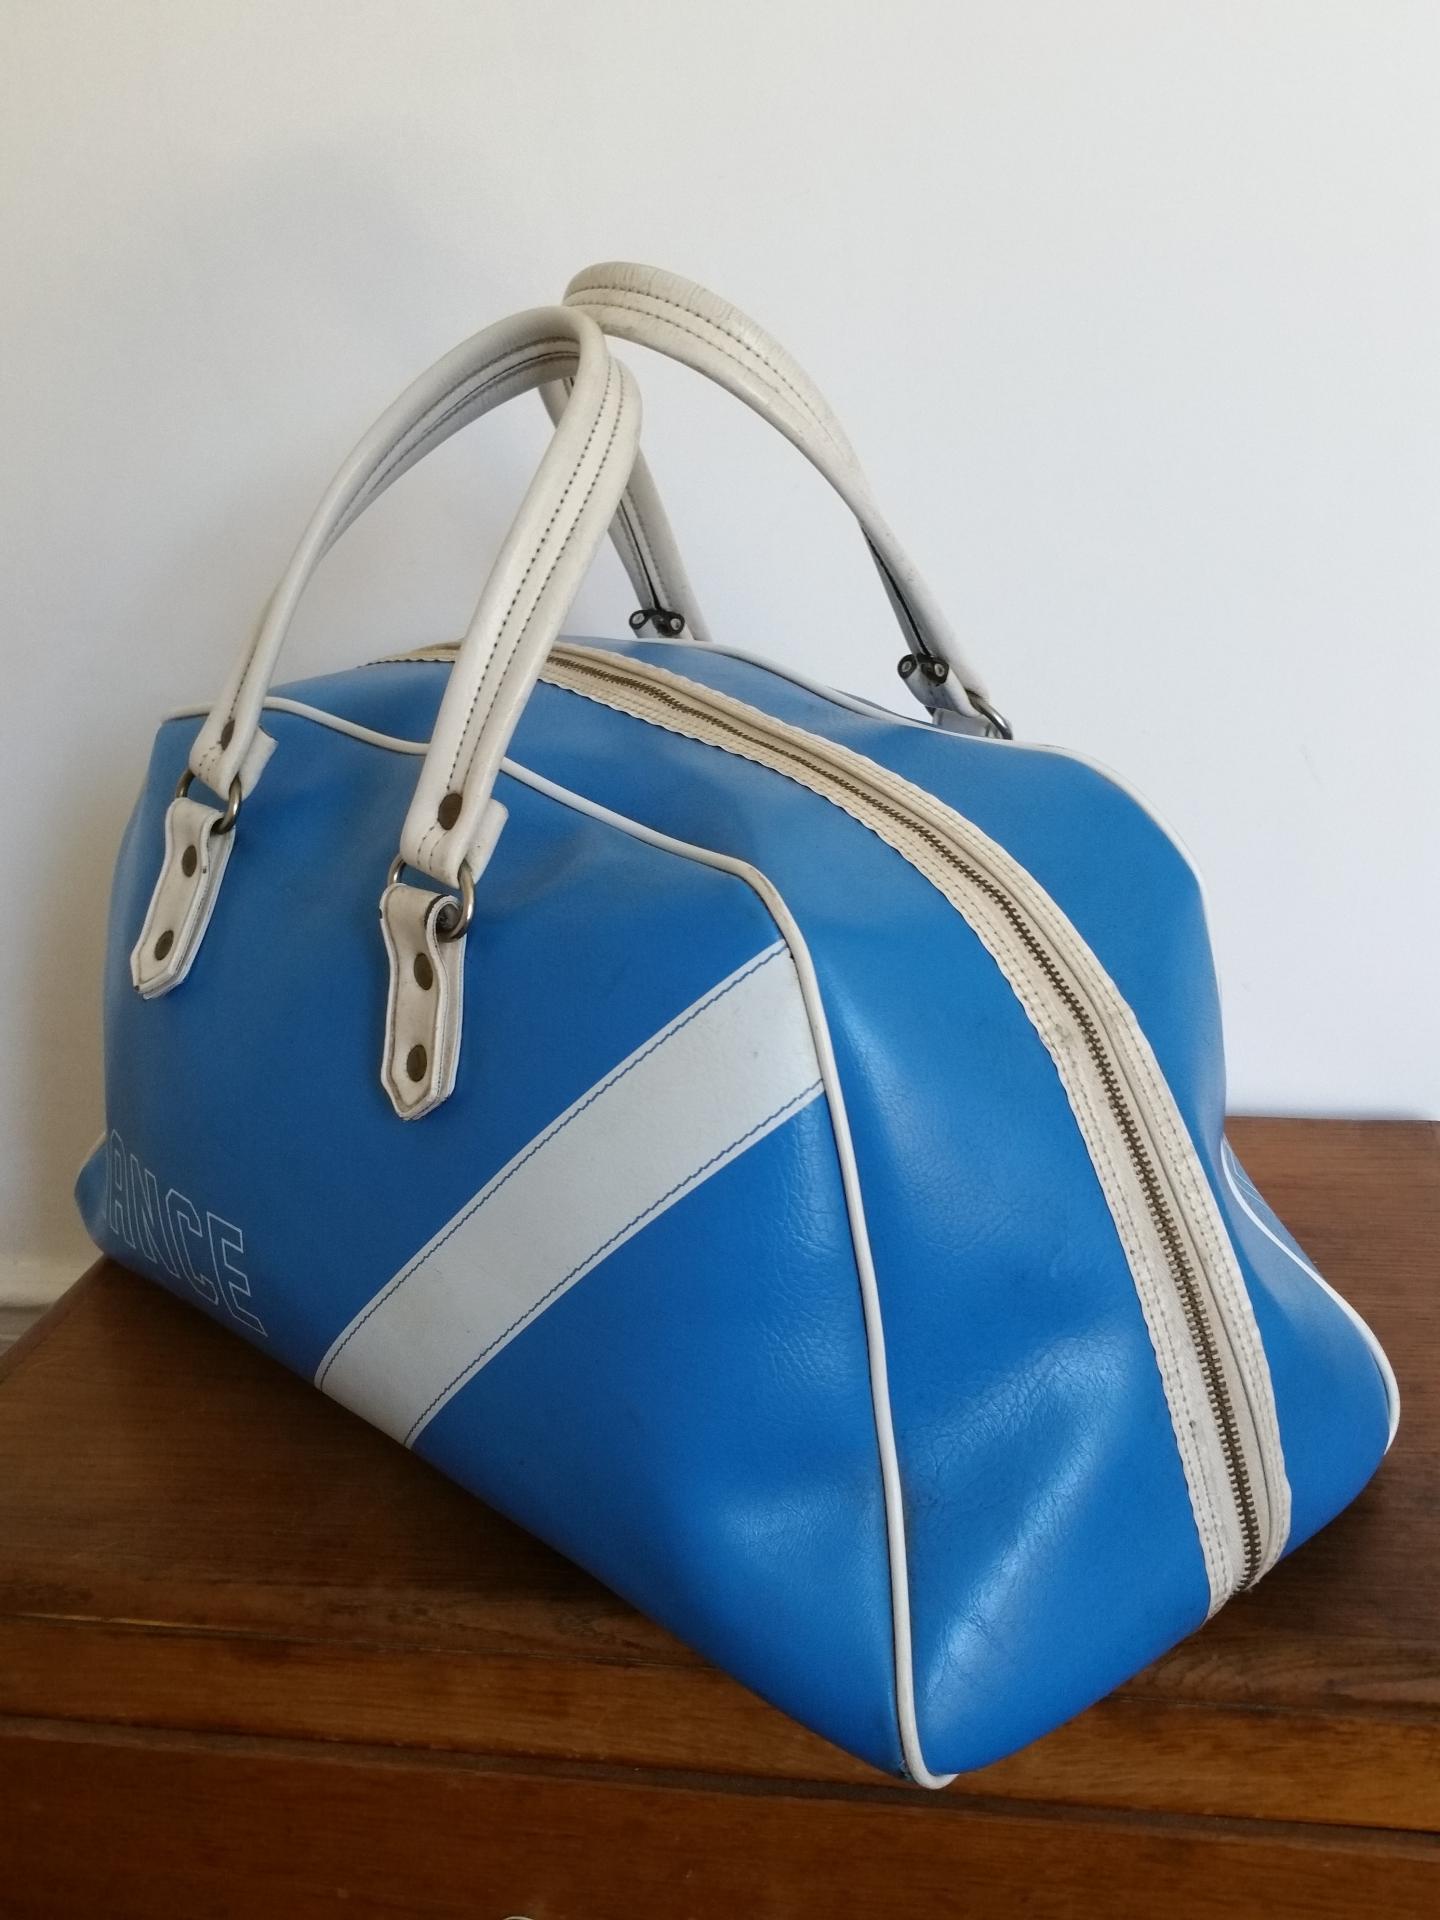 3 sac de sport bleu